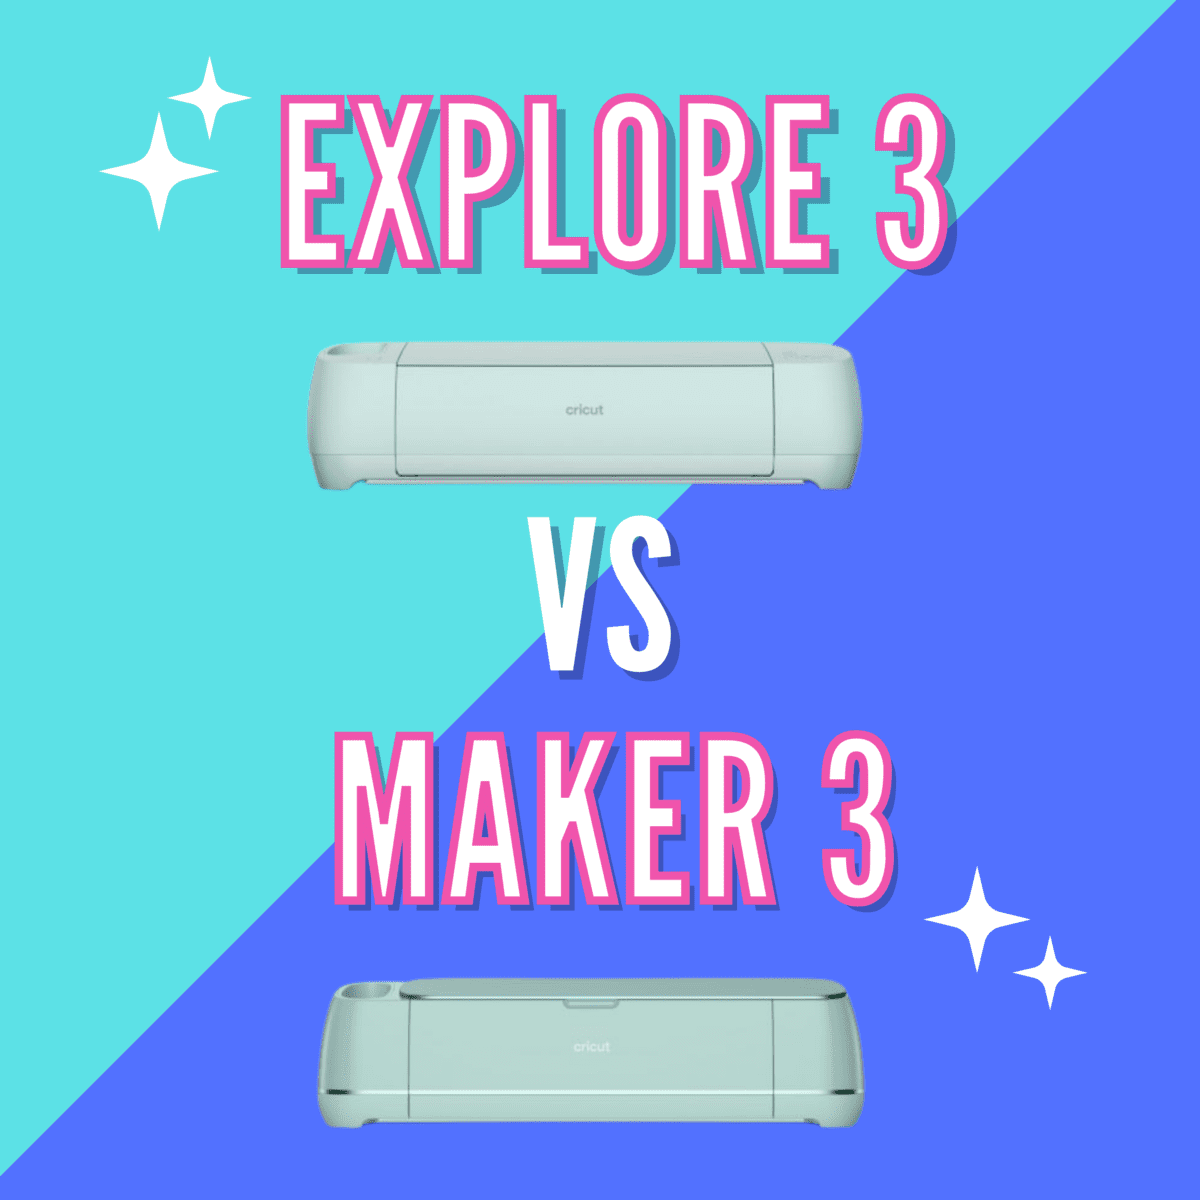 Cricut Maker 3 vs. Cricut Explore 3